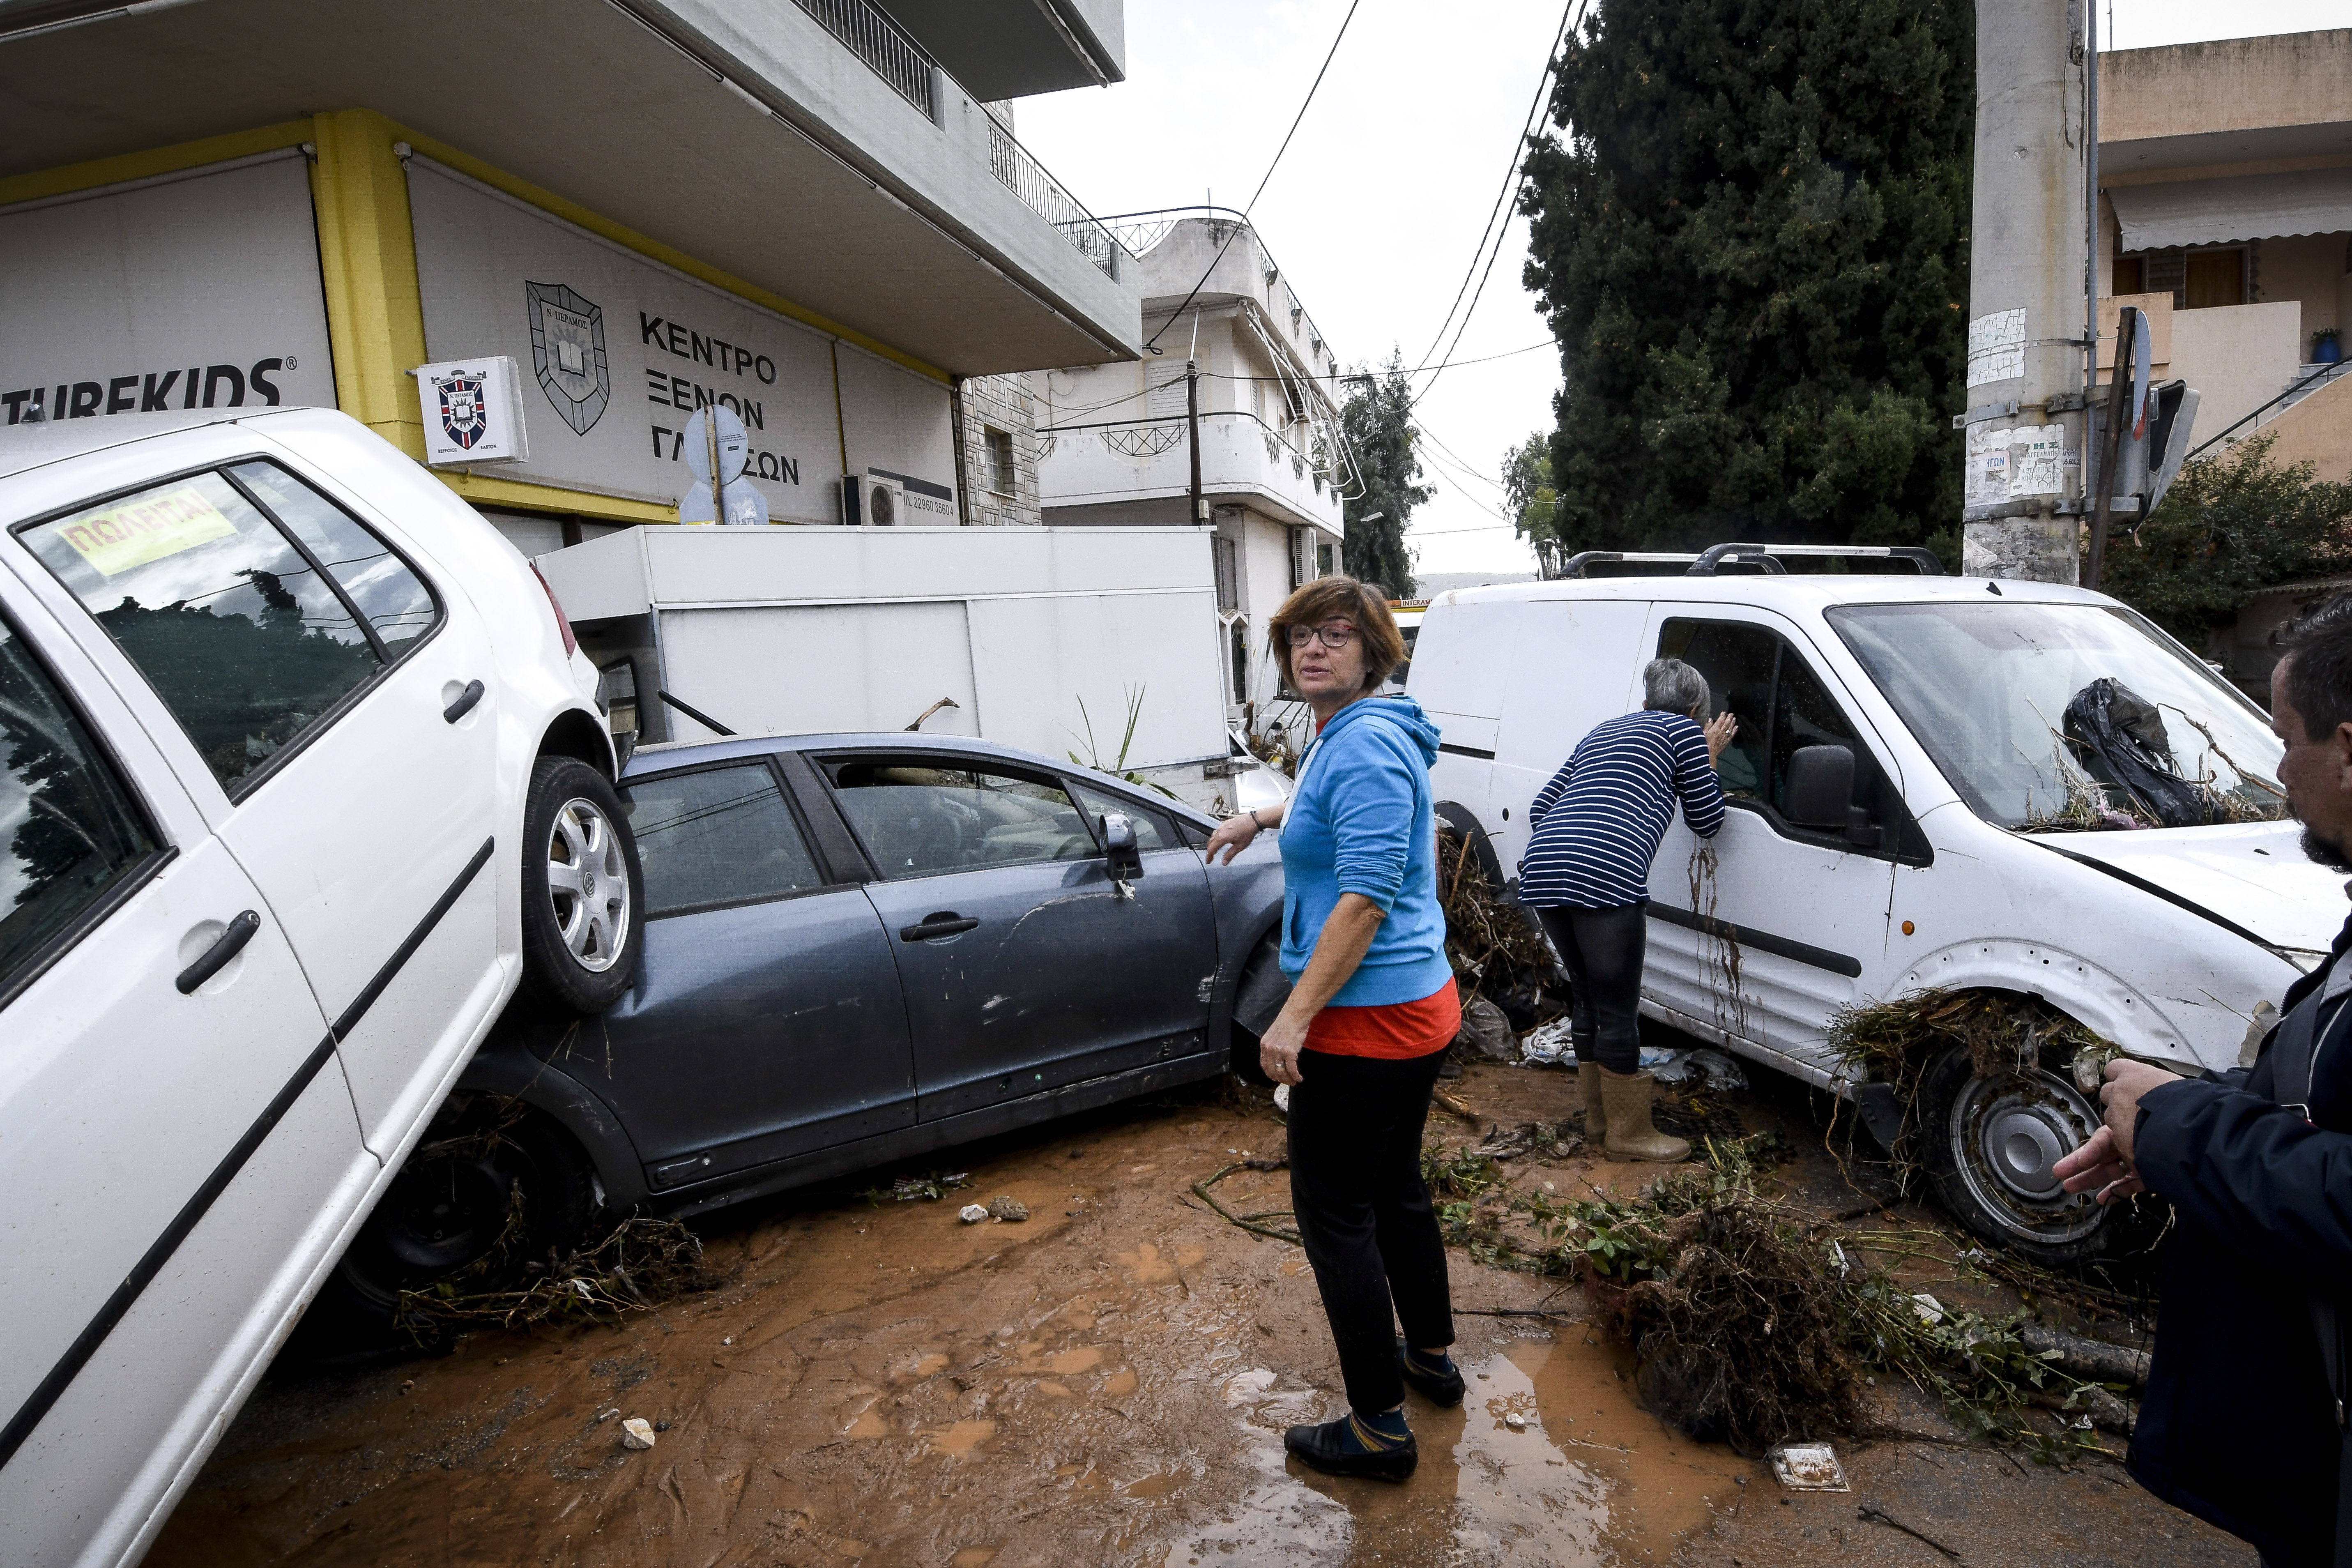 Τραγωδία με 15 νεκρούς στη Μάνδρα Αττικής – 10 τραυματίες, 1 γυναίκα διασωληνωμένη – Που έχει διακοπεί η κυκλοφορία στο οδικό δίκτυο (συνεχής ενημέρωση)